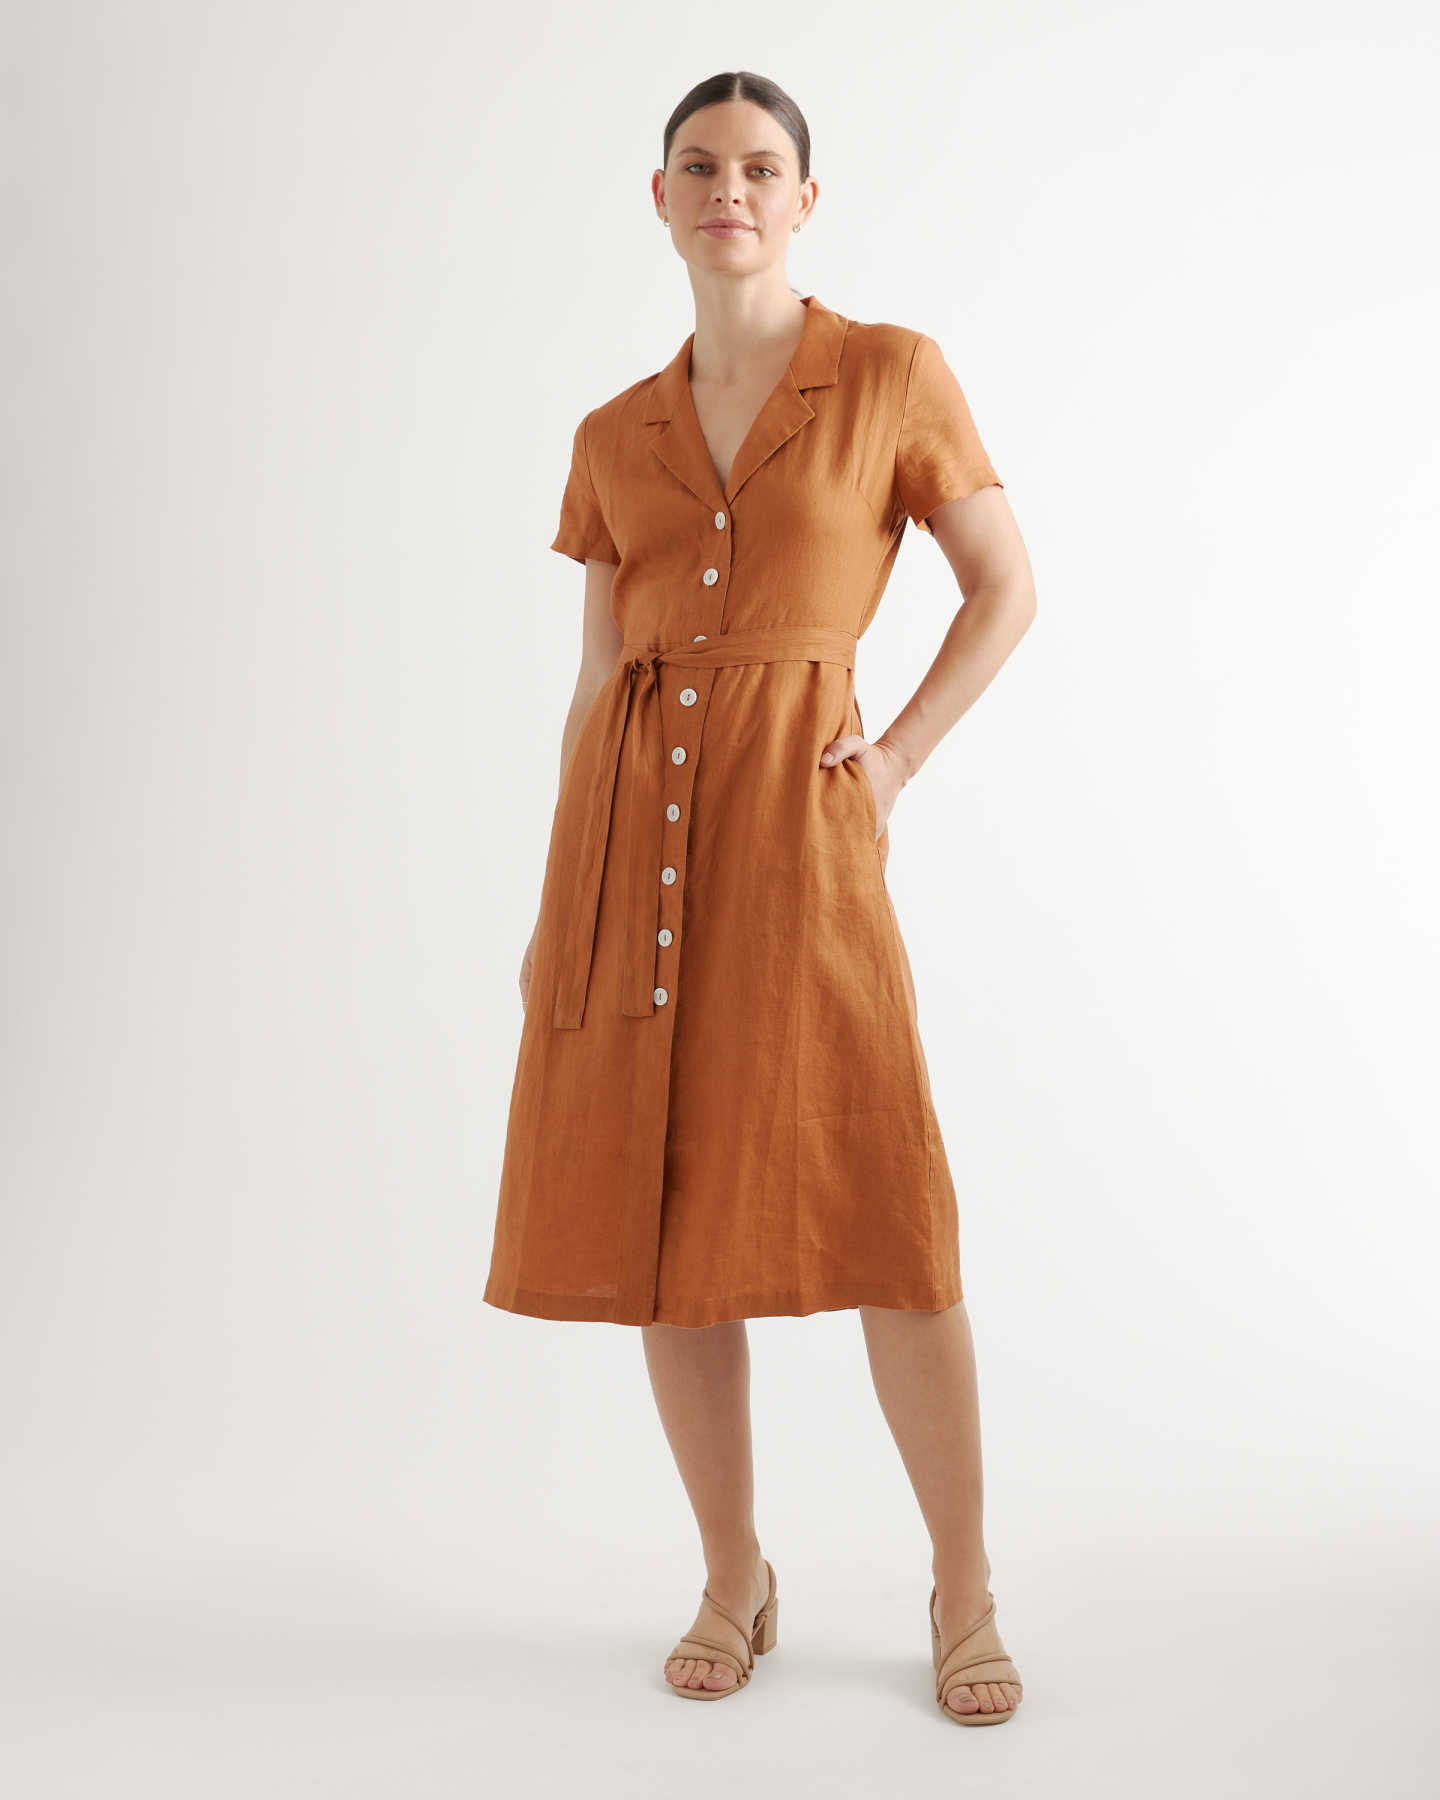 100% European Linen Button Front Dress - Terracotta